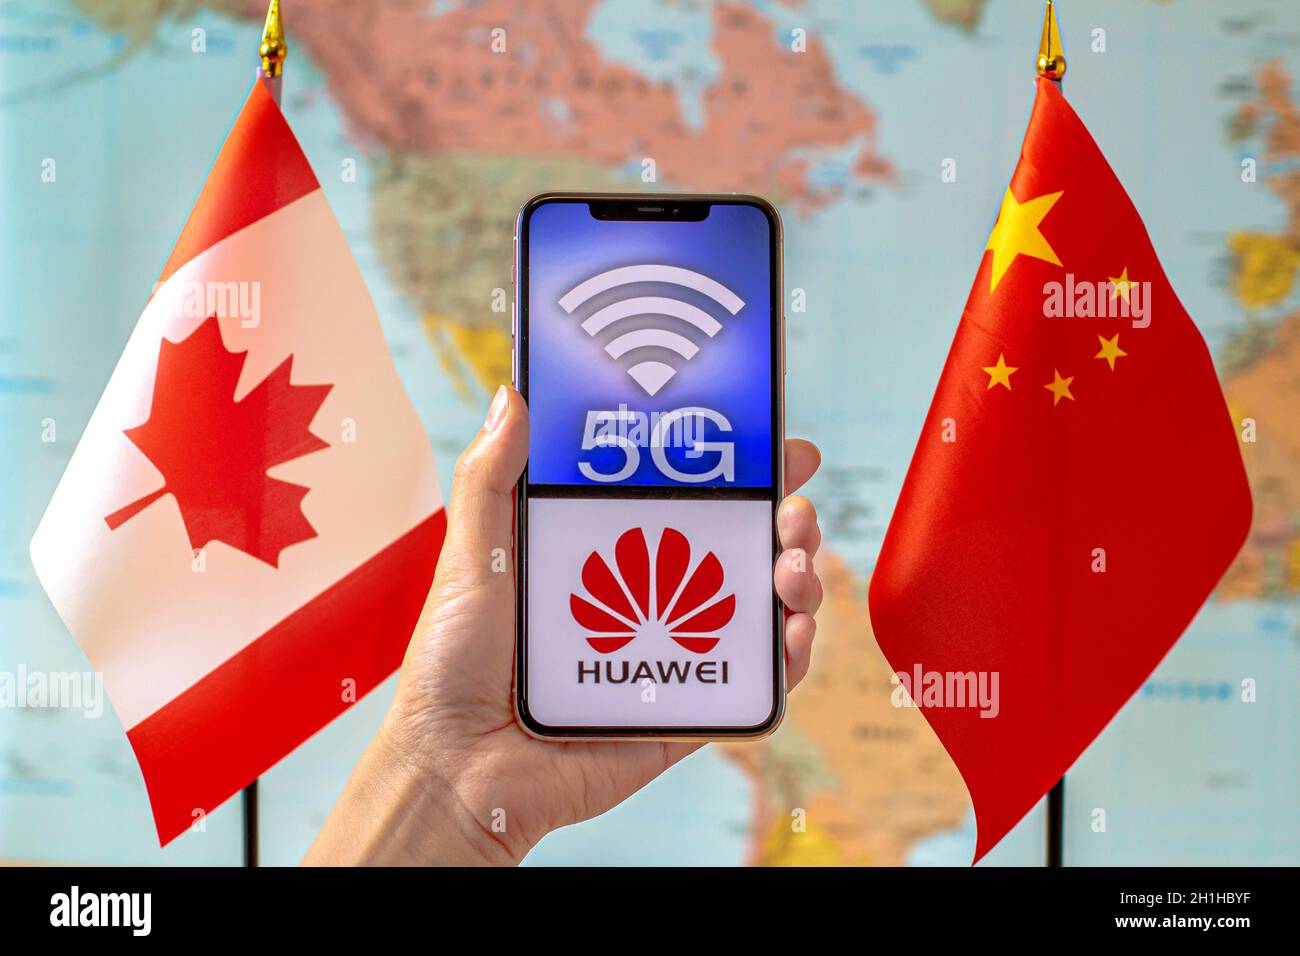 Calgary, Alberta, Kanada. September 2020. Eine Person, die ein iPhone mit einem 5G- und Huawei-Logo auf dem Bildschirm neben einer Kanada- und China-Flagge auf einer Welt hält Stockfoto